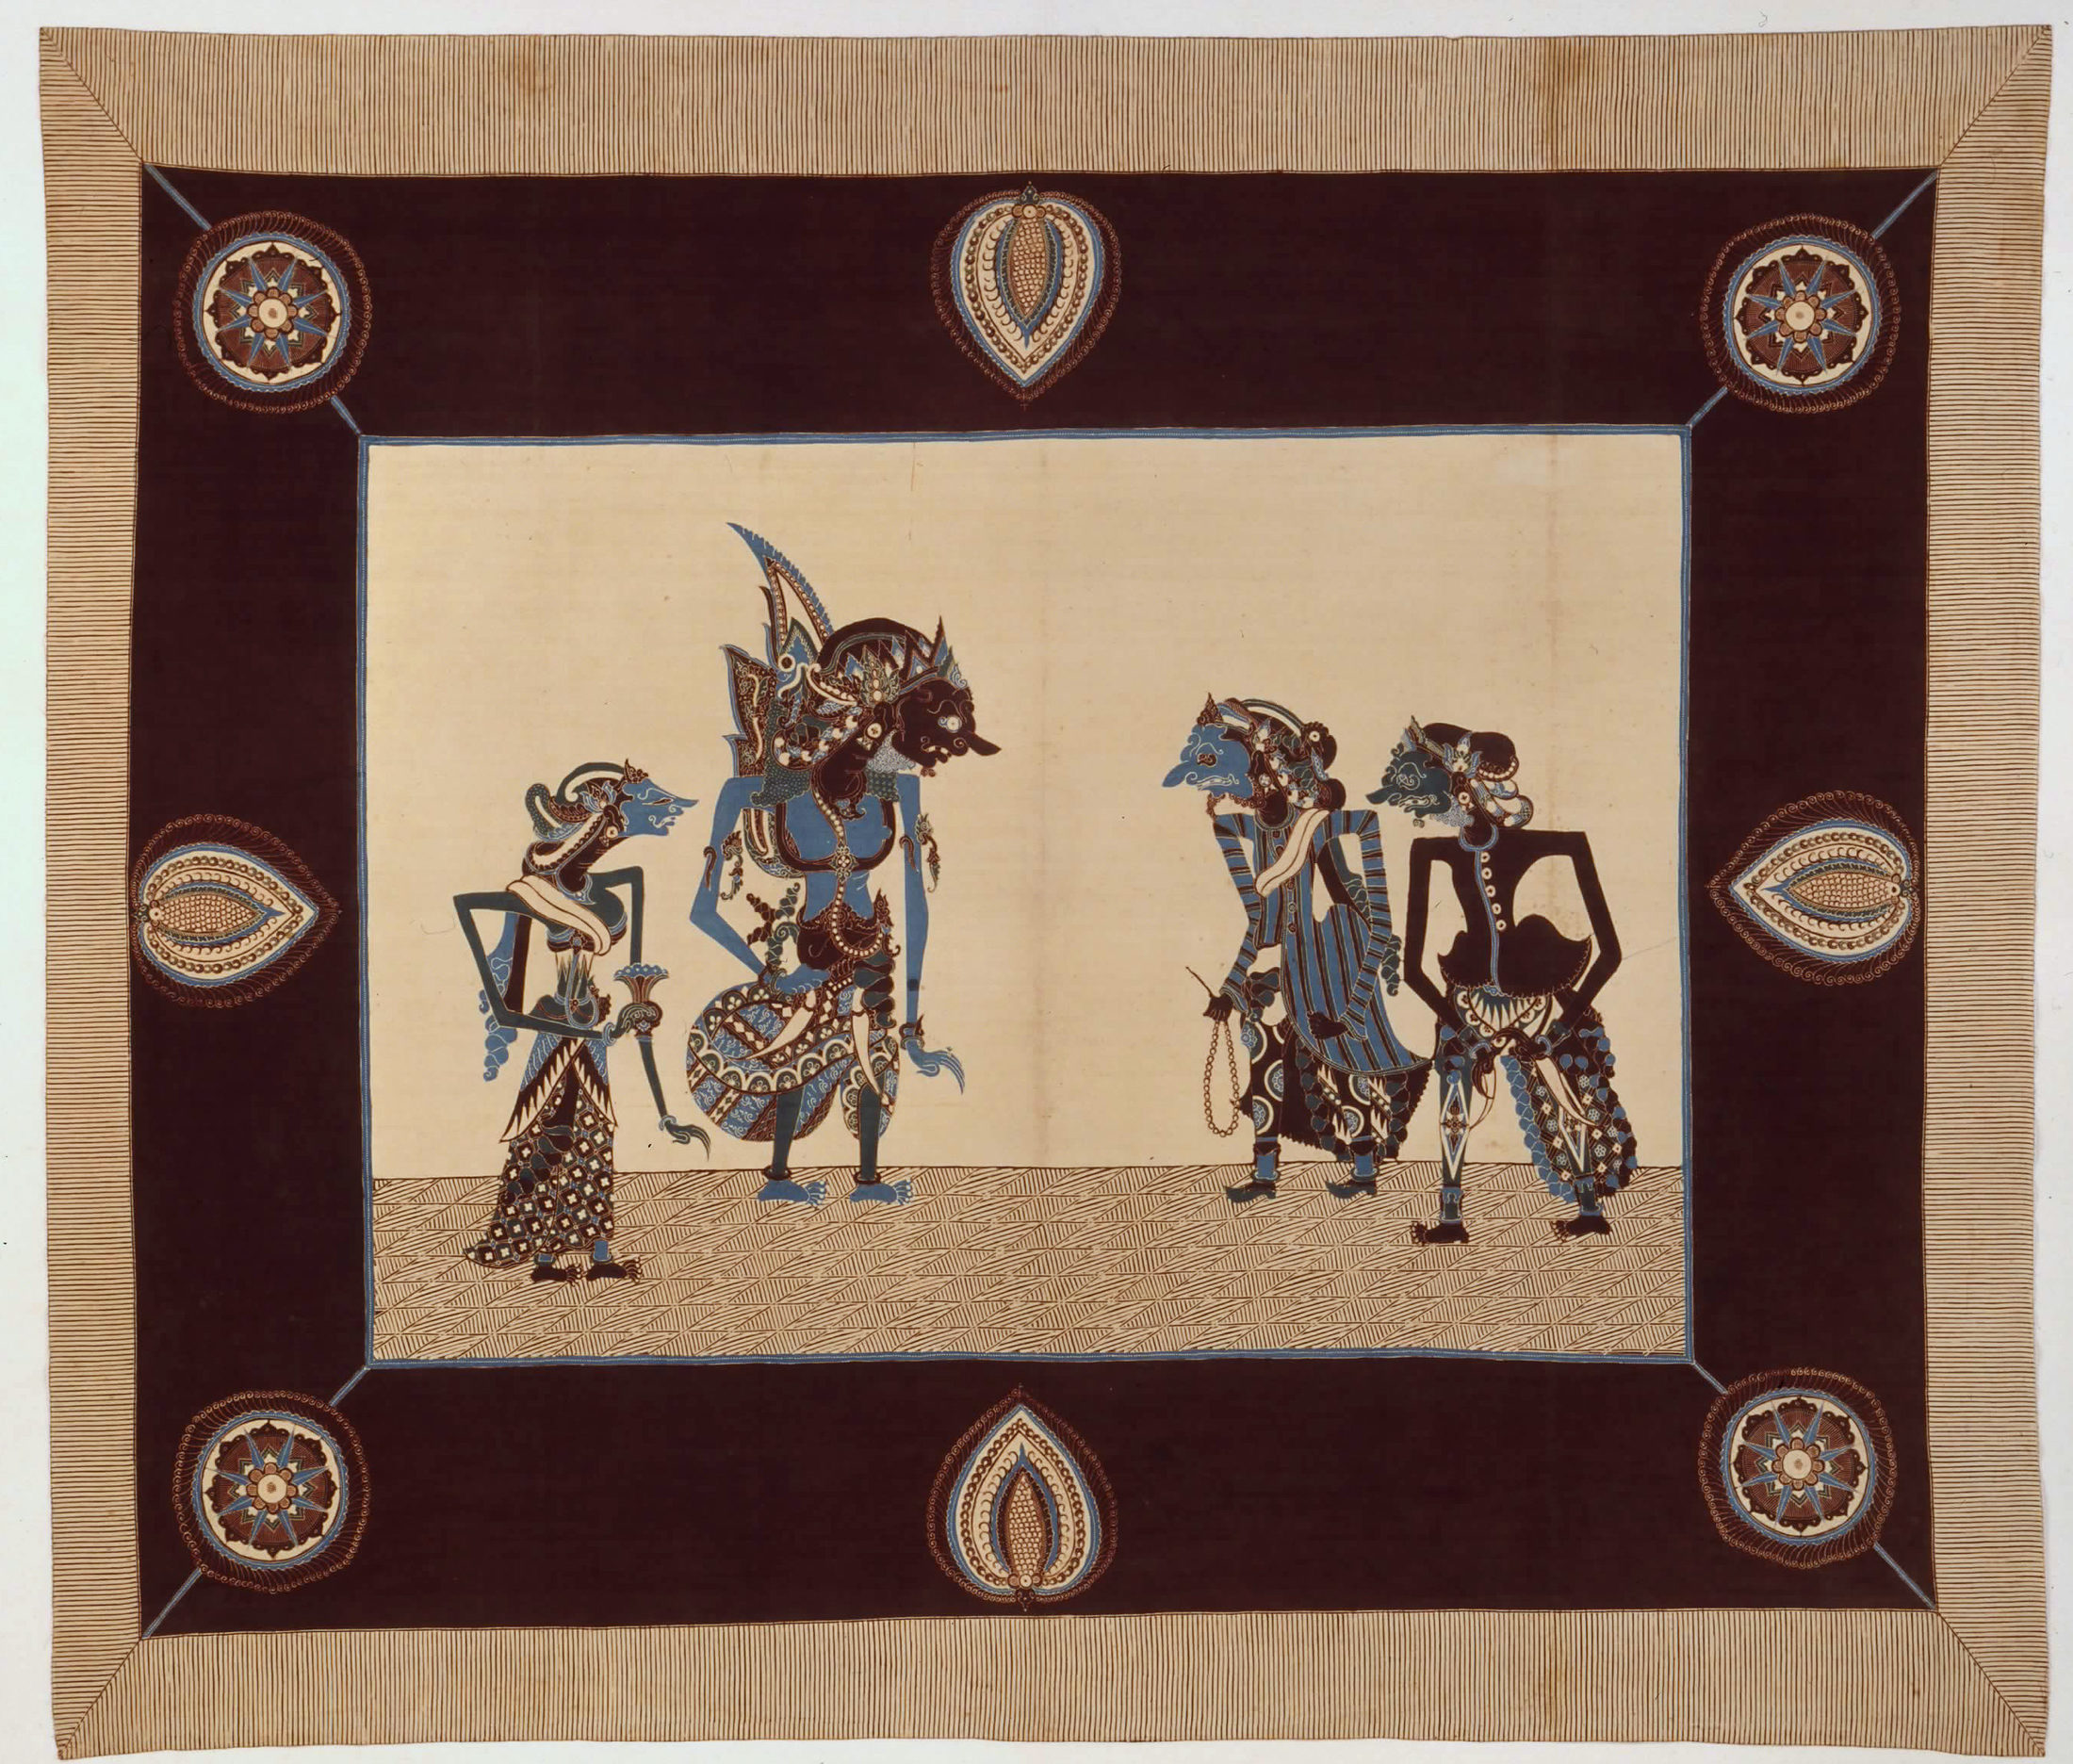 Batik-Tuch mit Wayang-Figuren (Wird bei Klick vergrößert)